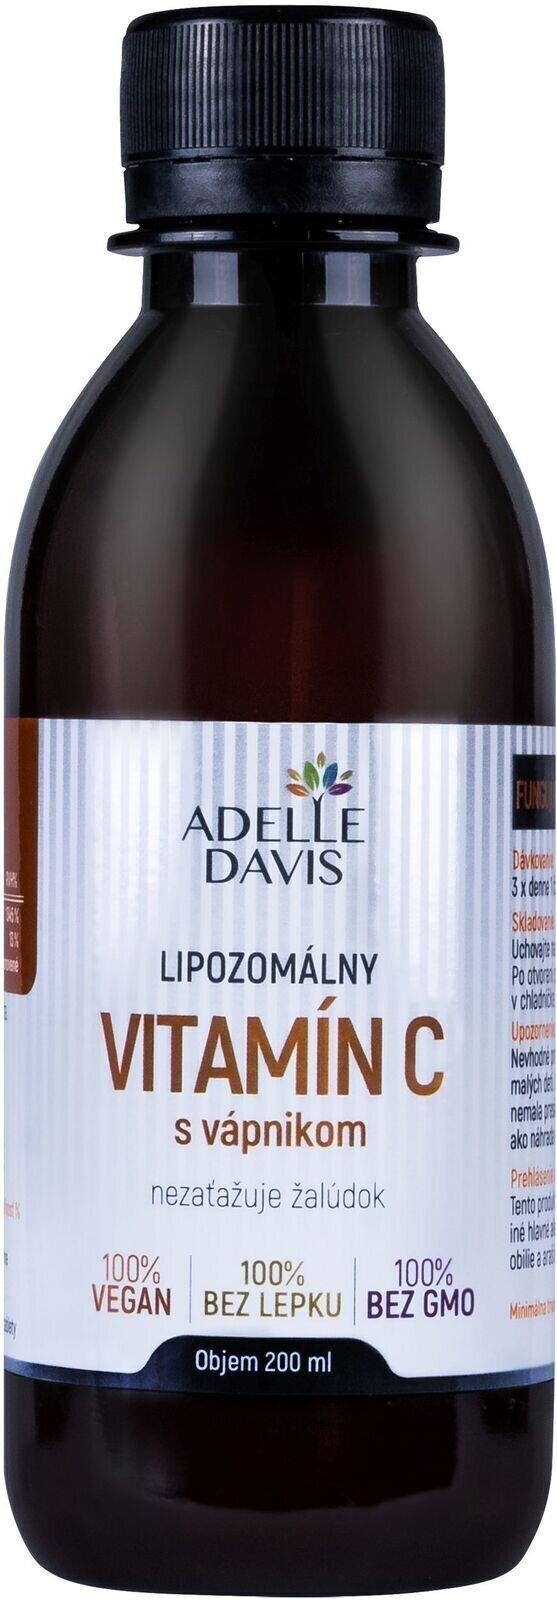 C Vitamin Adelle Davis Liposomal Vitamin C Calcium 200 ml Vitamin C with Calcium C Vitamin